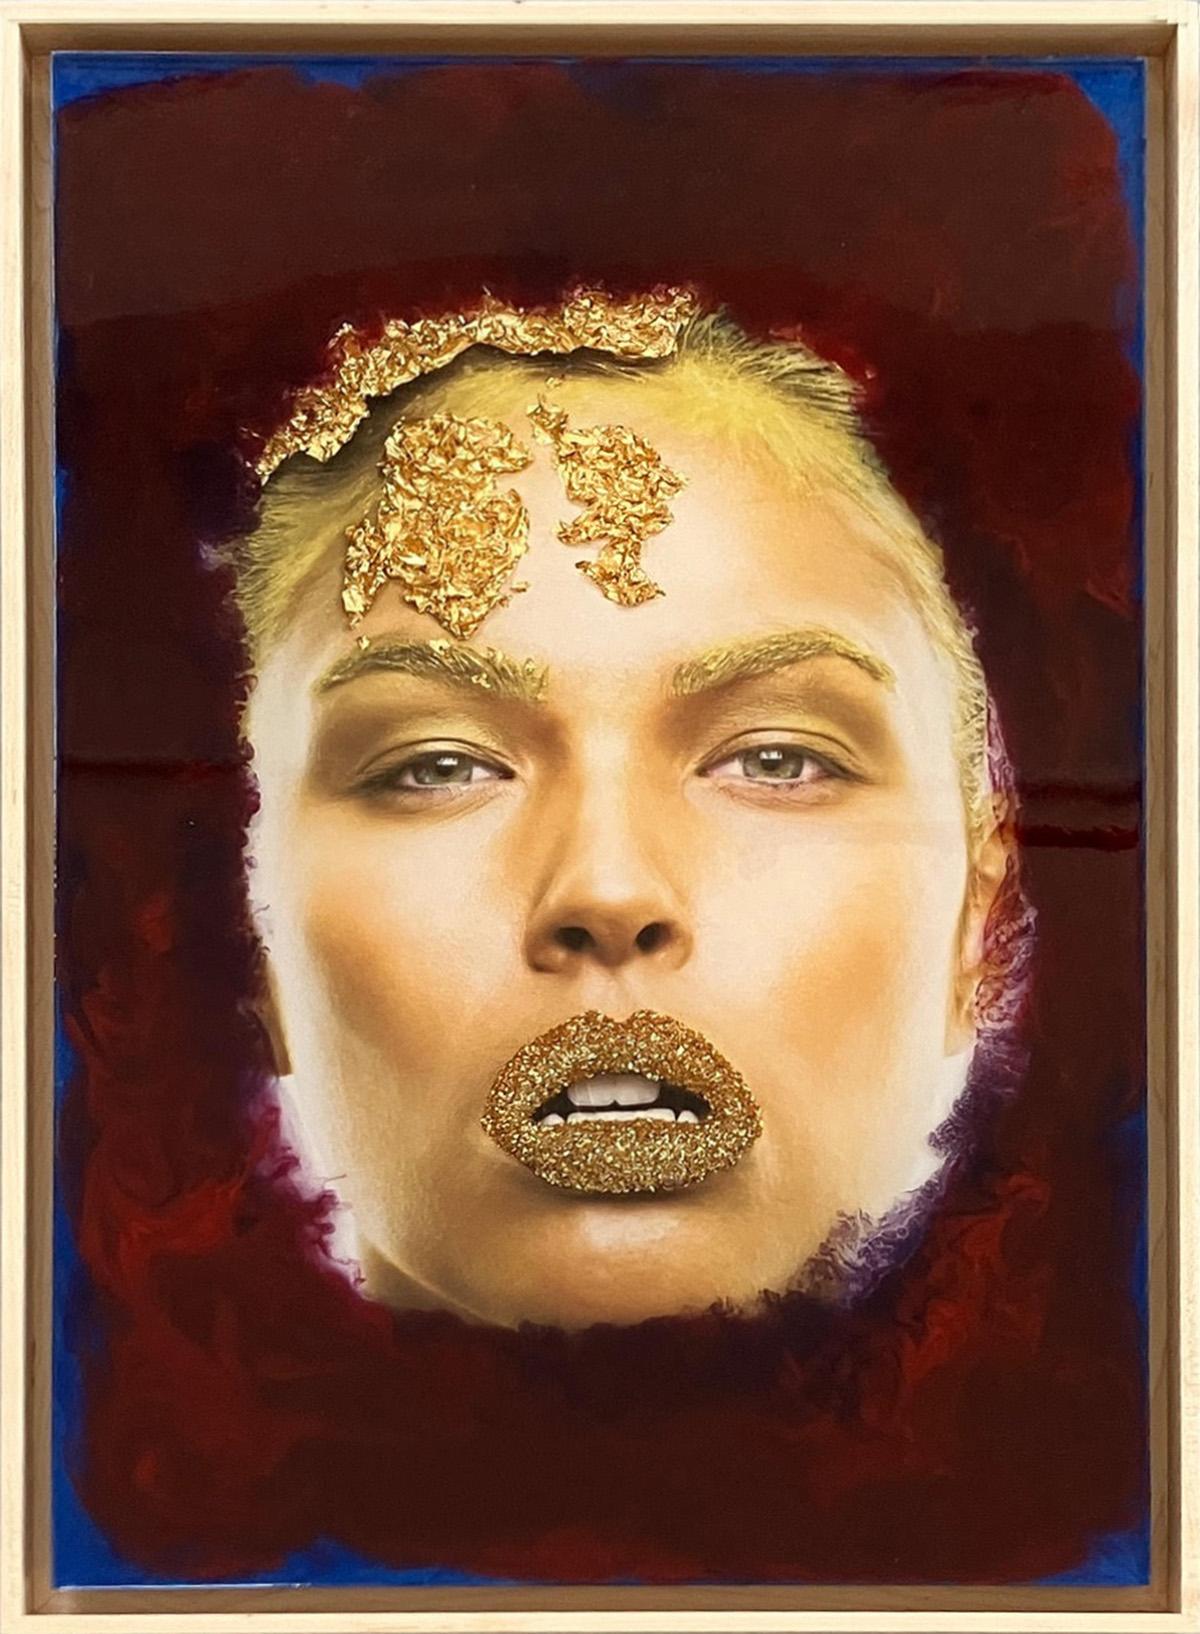 Gold Kiss 3D.  Mixed media portrait